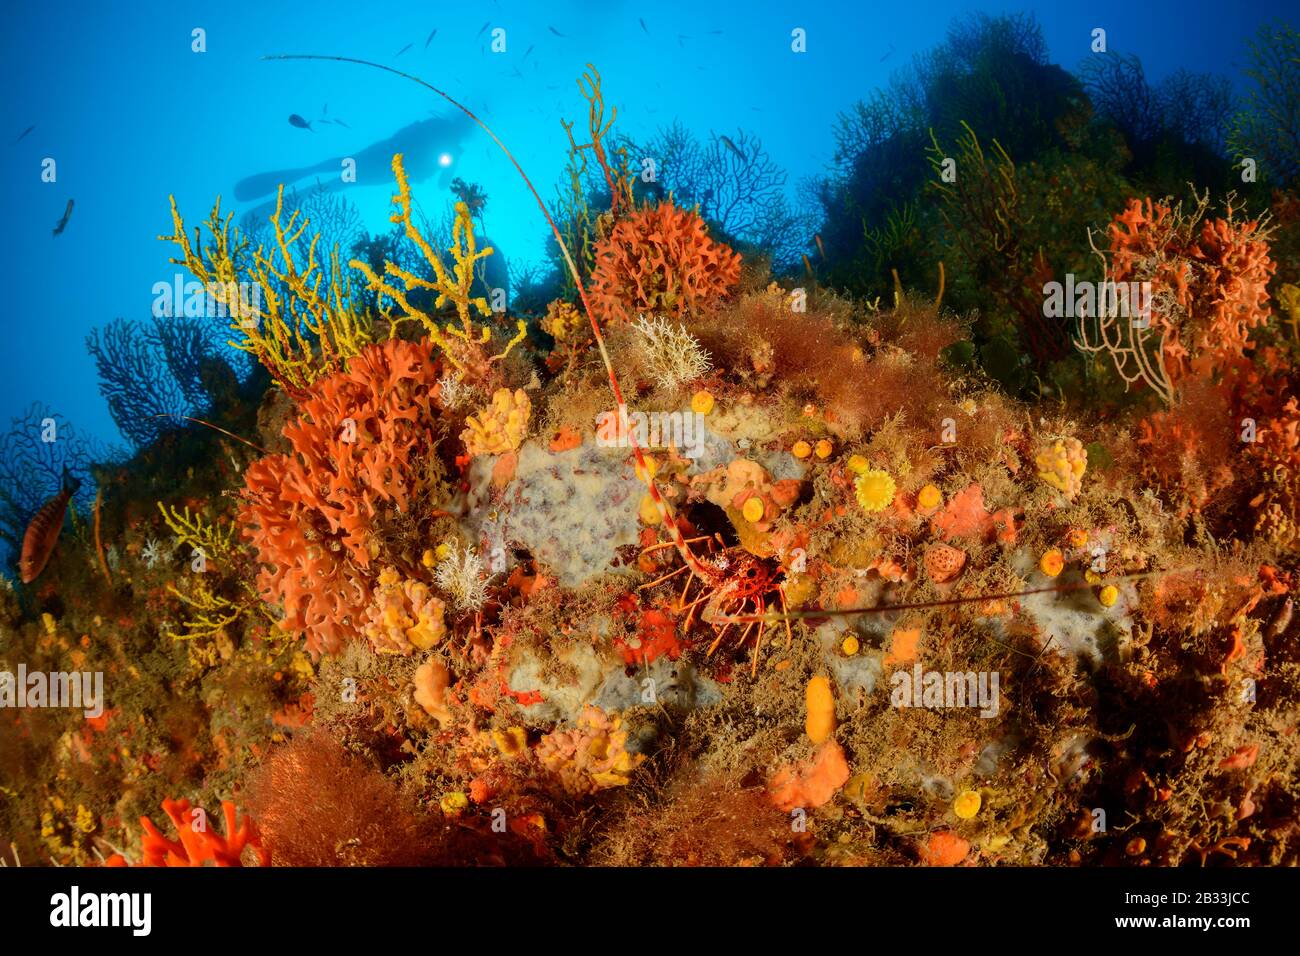 Aragosta spinosa europea, Palinurus elephas, nella colorata barriera corallina mediterranea, e sub, Tamariu, Costa Brava, Spagna, Mar Mediterraneo, MR Foto Stock